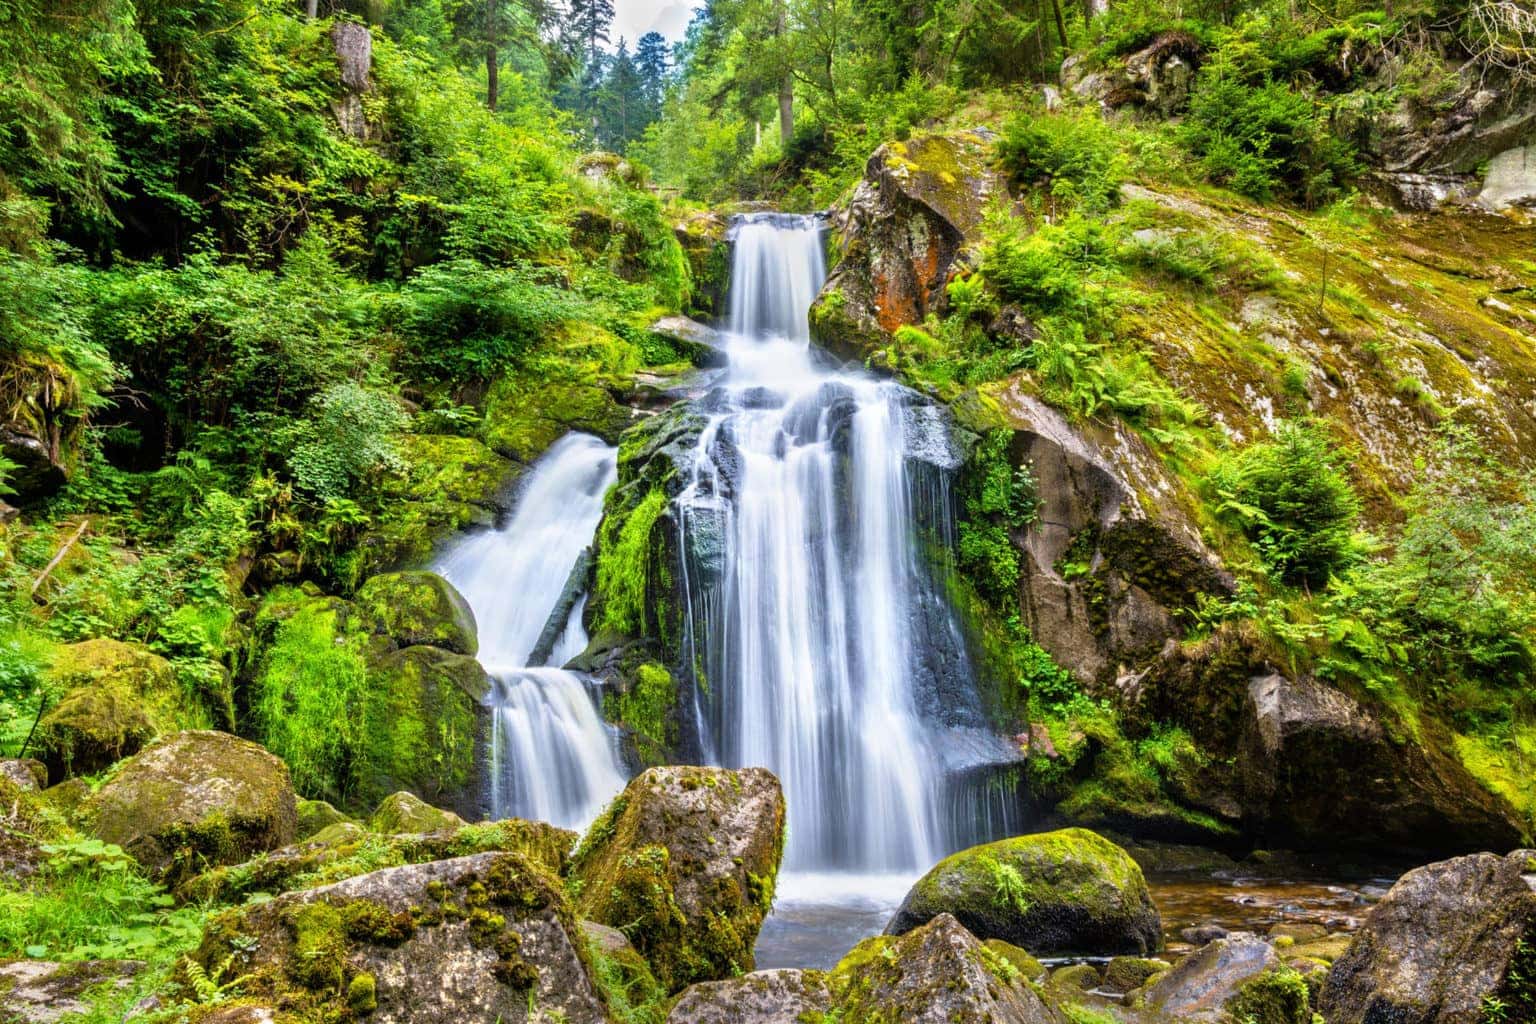 De Triberger Watervallen in het Zwarte Woud behoren tot de natuurwonderen